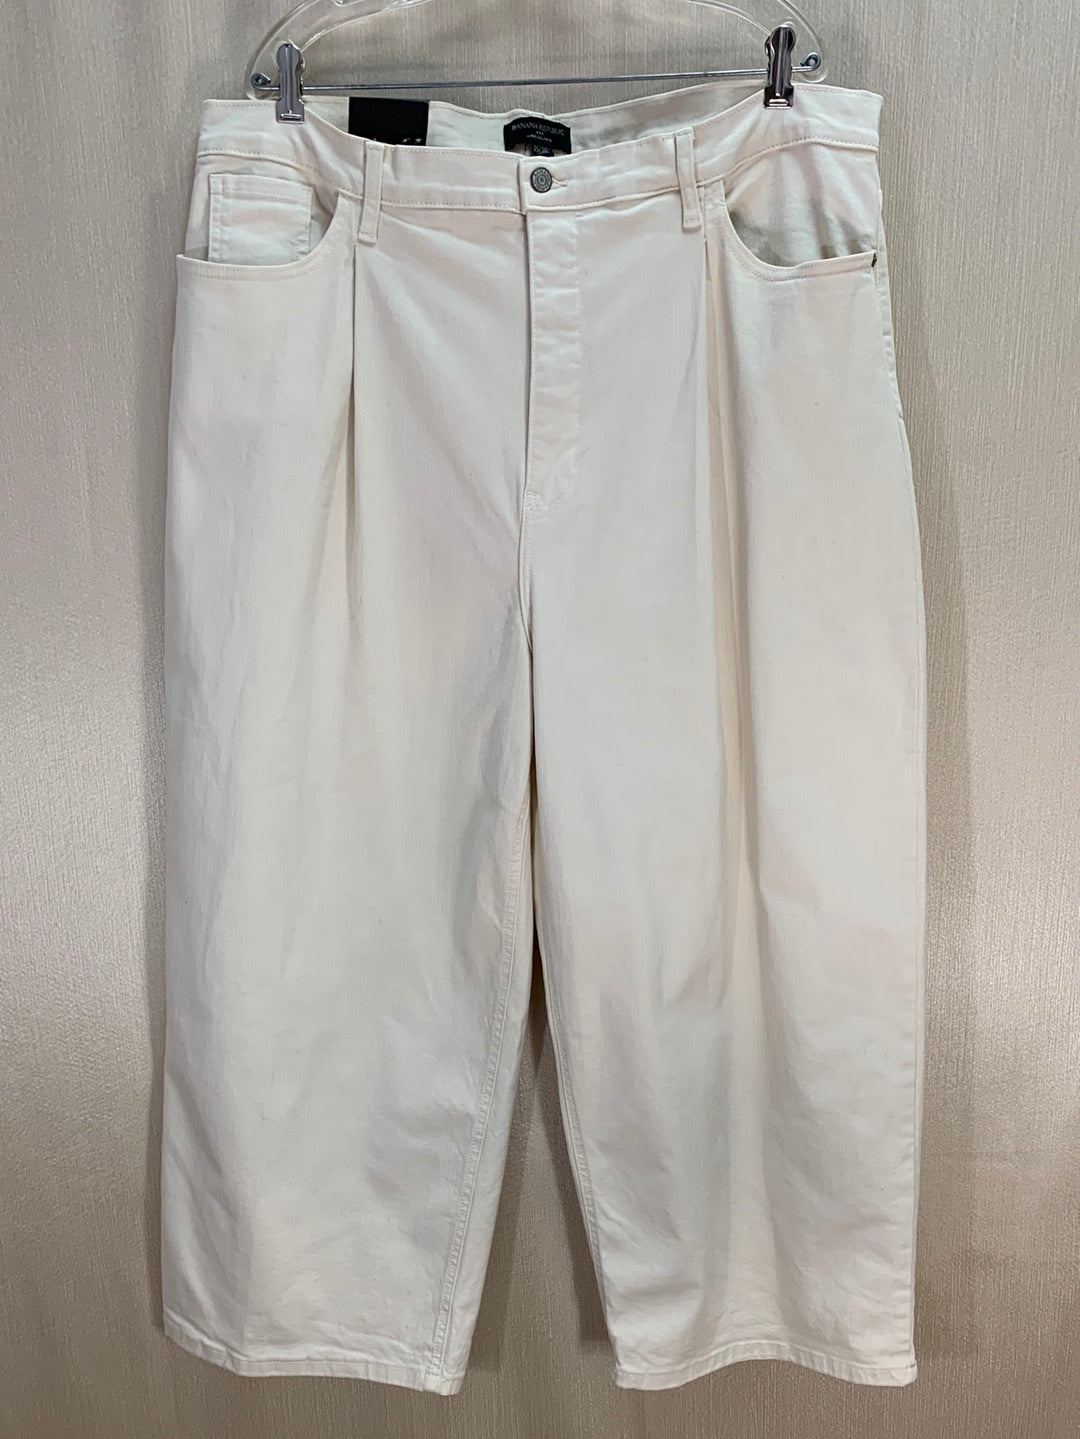 NWT - BANANA REPUBLIC ecru Pleat Wide Leg Crop High Rise Jeans - 35/20